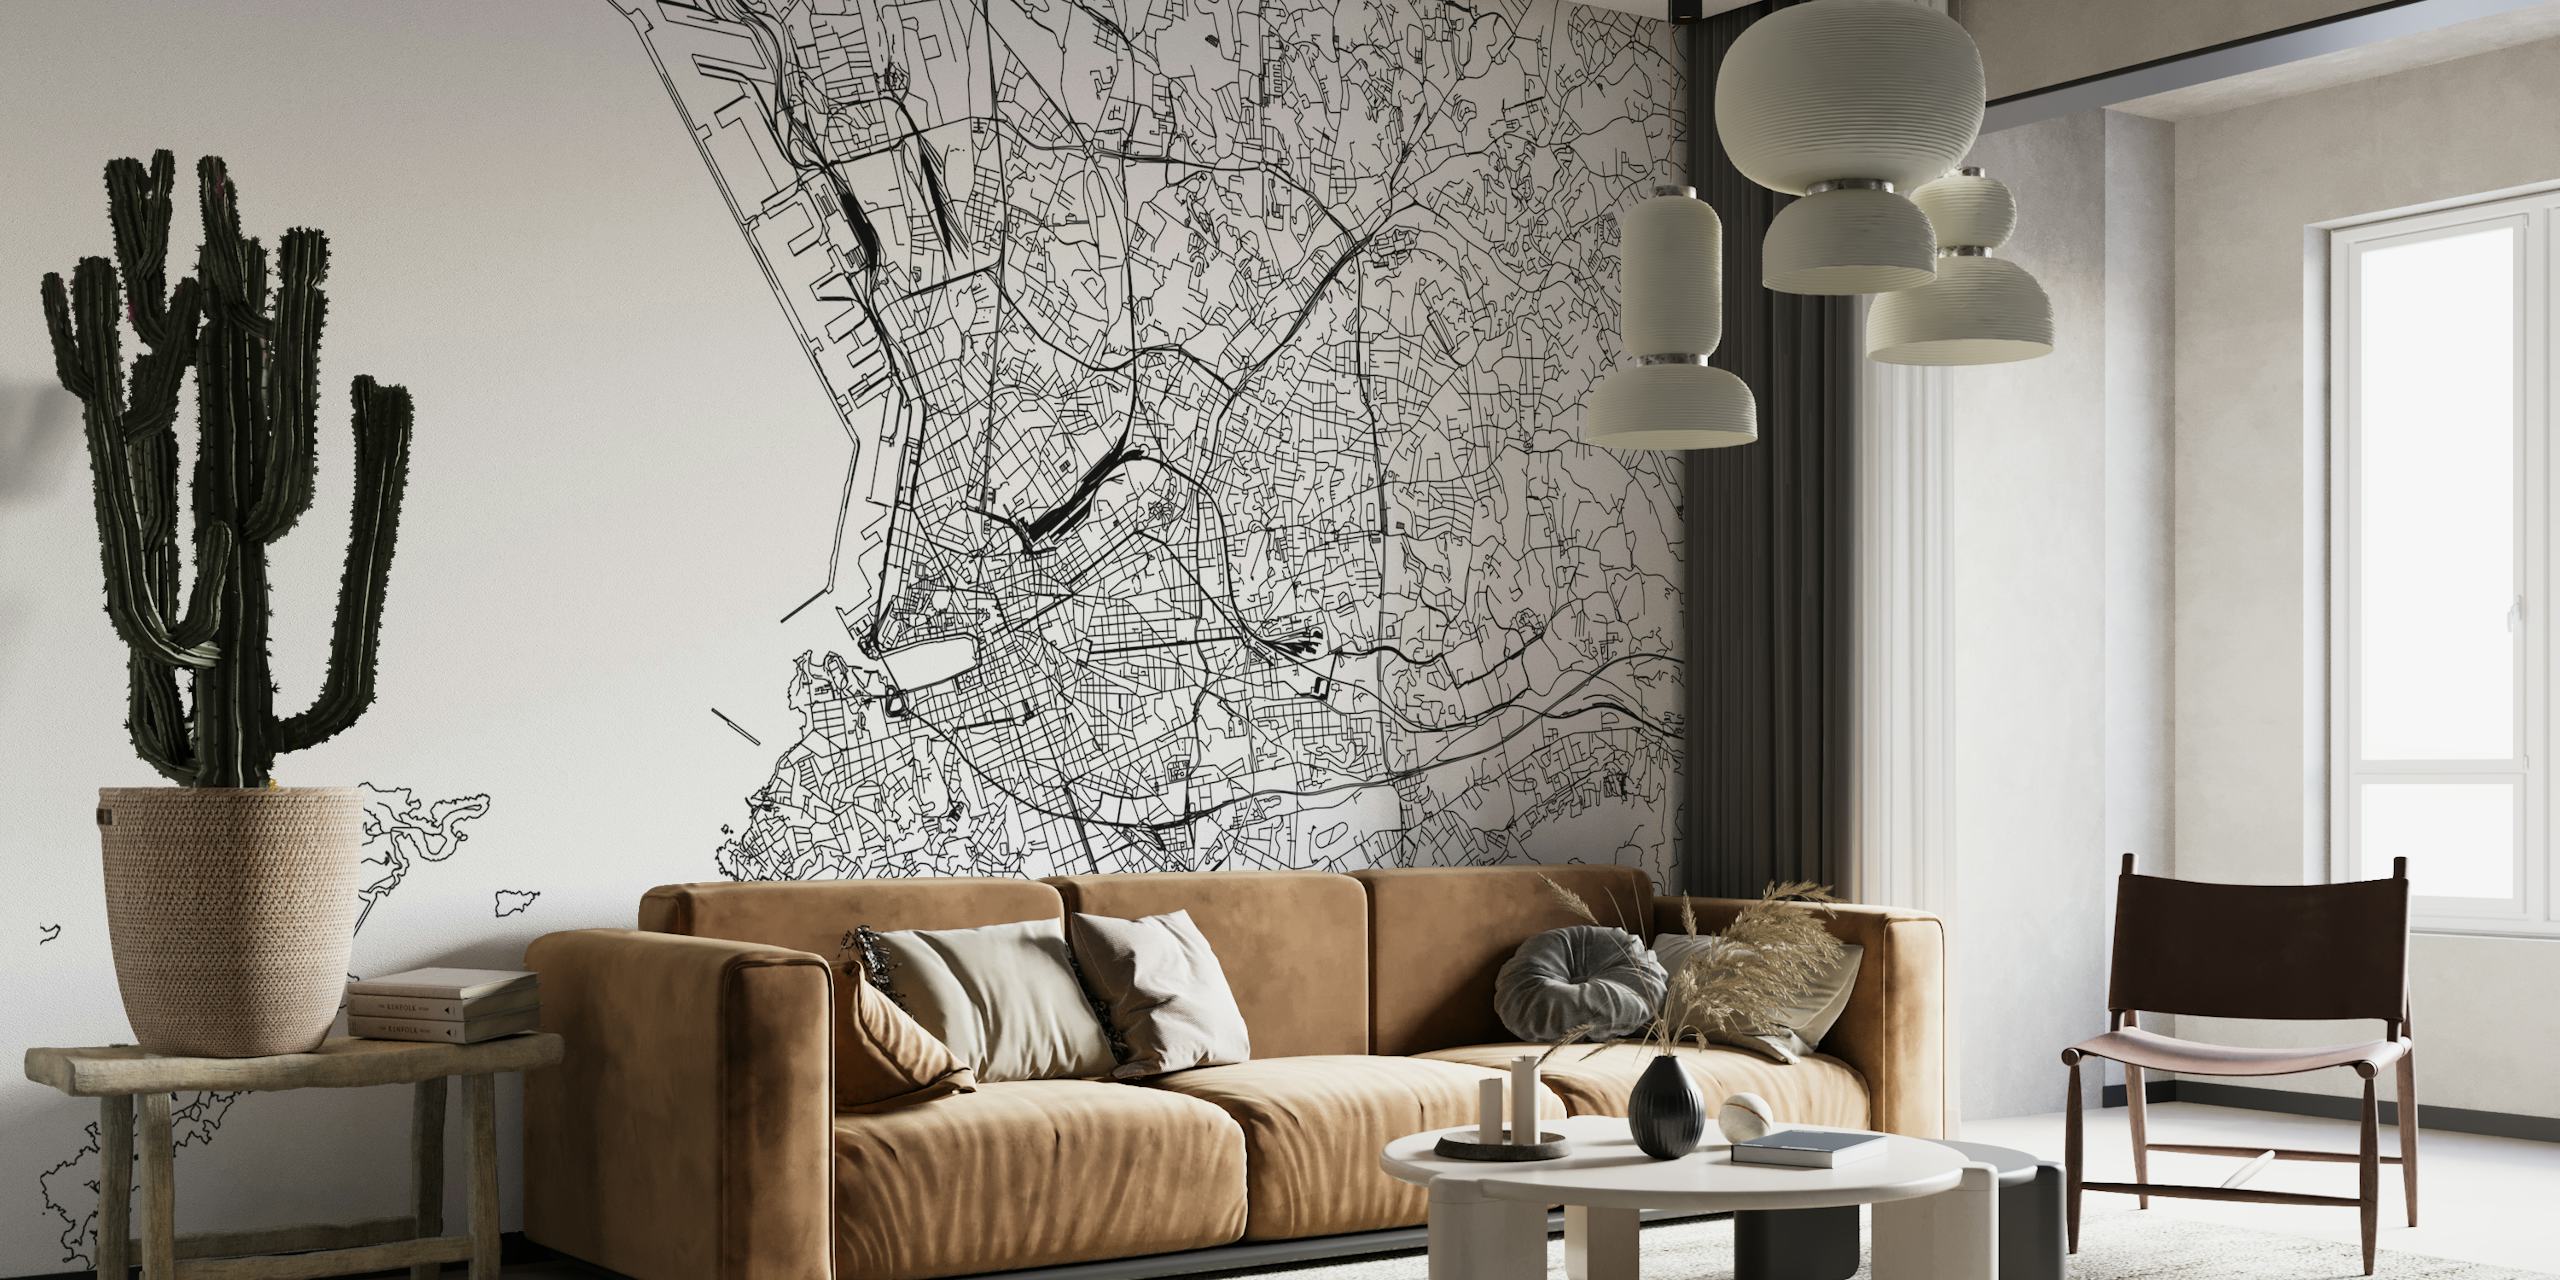 Crno-bijela detaljna karta Marseillea zidna slika za unutarnje uređenje.